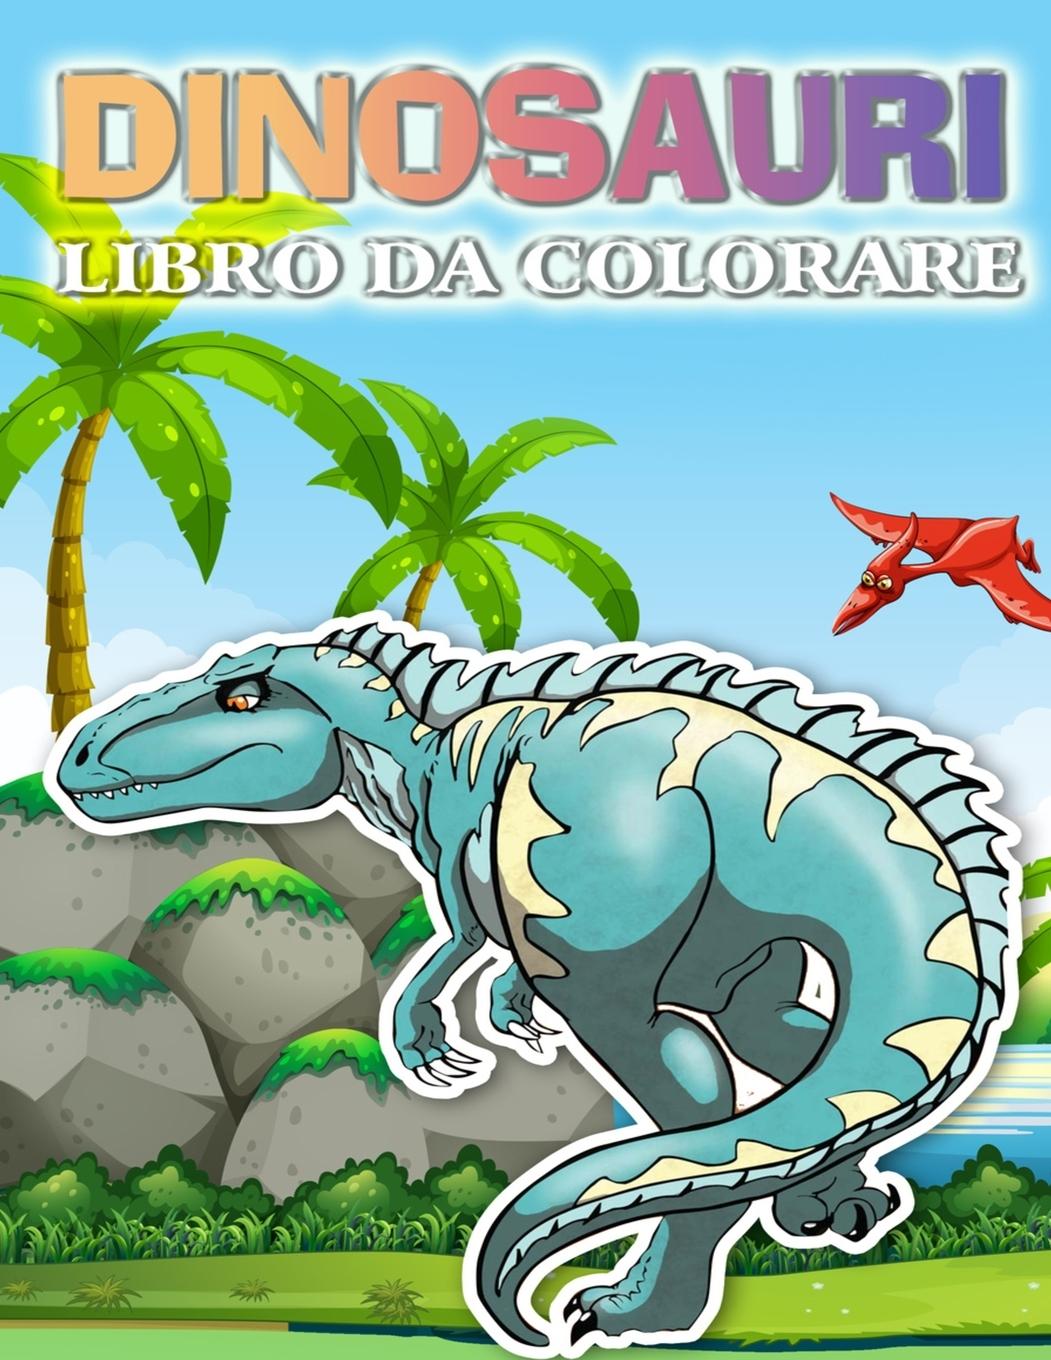 Kniha Libro da colorare di dinosauri: Libro da colorare per bambini con simpatici dinosauri per bambini, ragazzi e ragazze, dai 4 agli 8 anni 